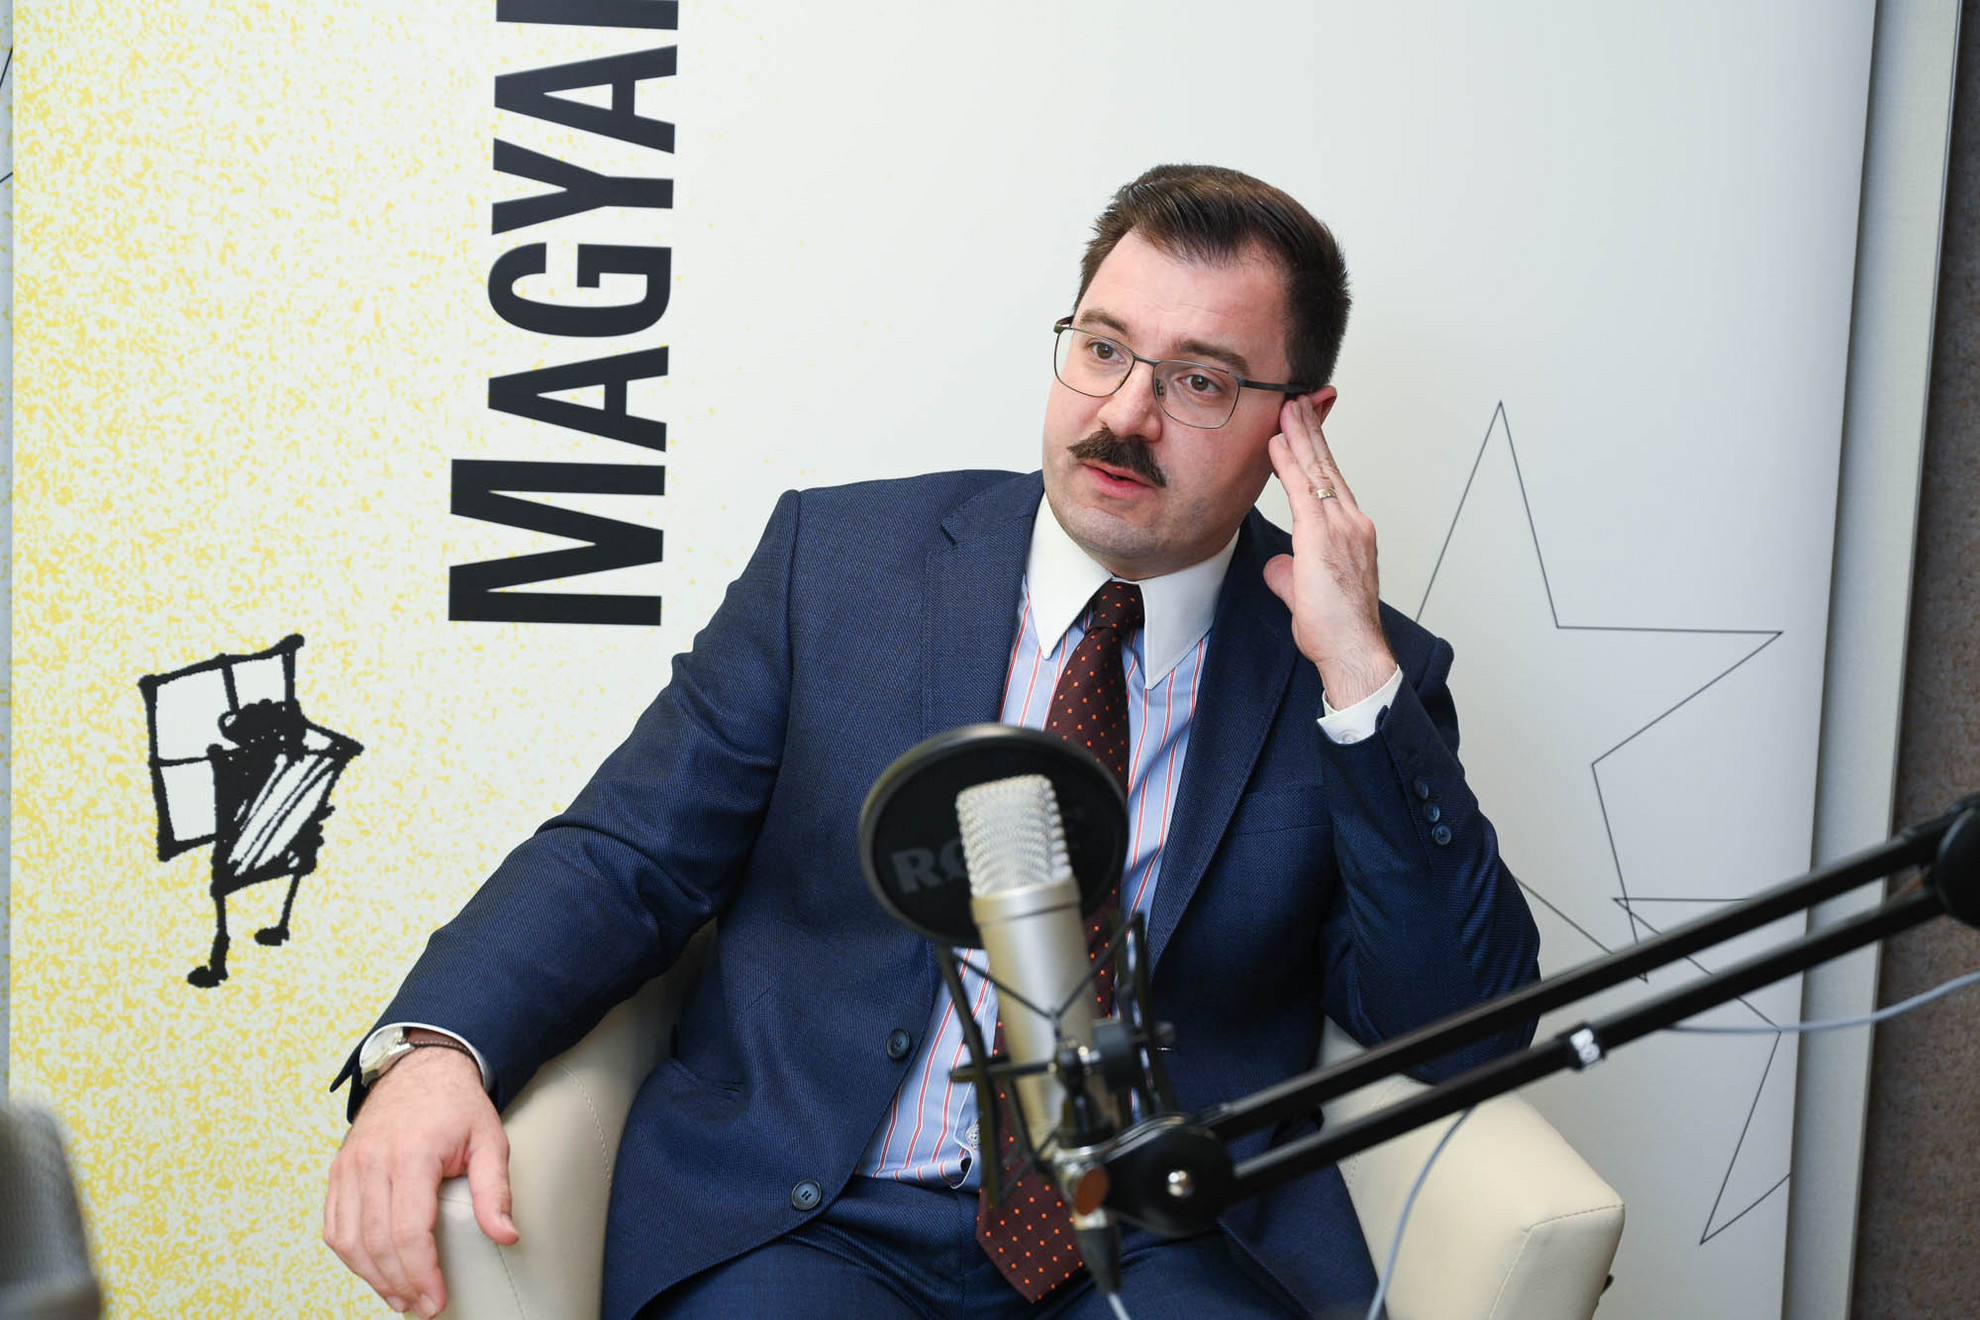 Szánthó Miklós, az Alapjogokért Központ igazgatója a Faktum adásának felvételén